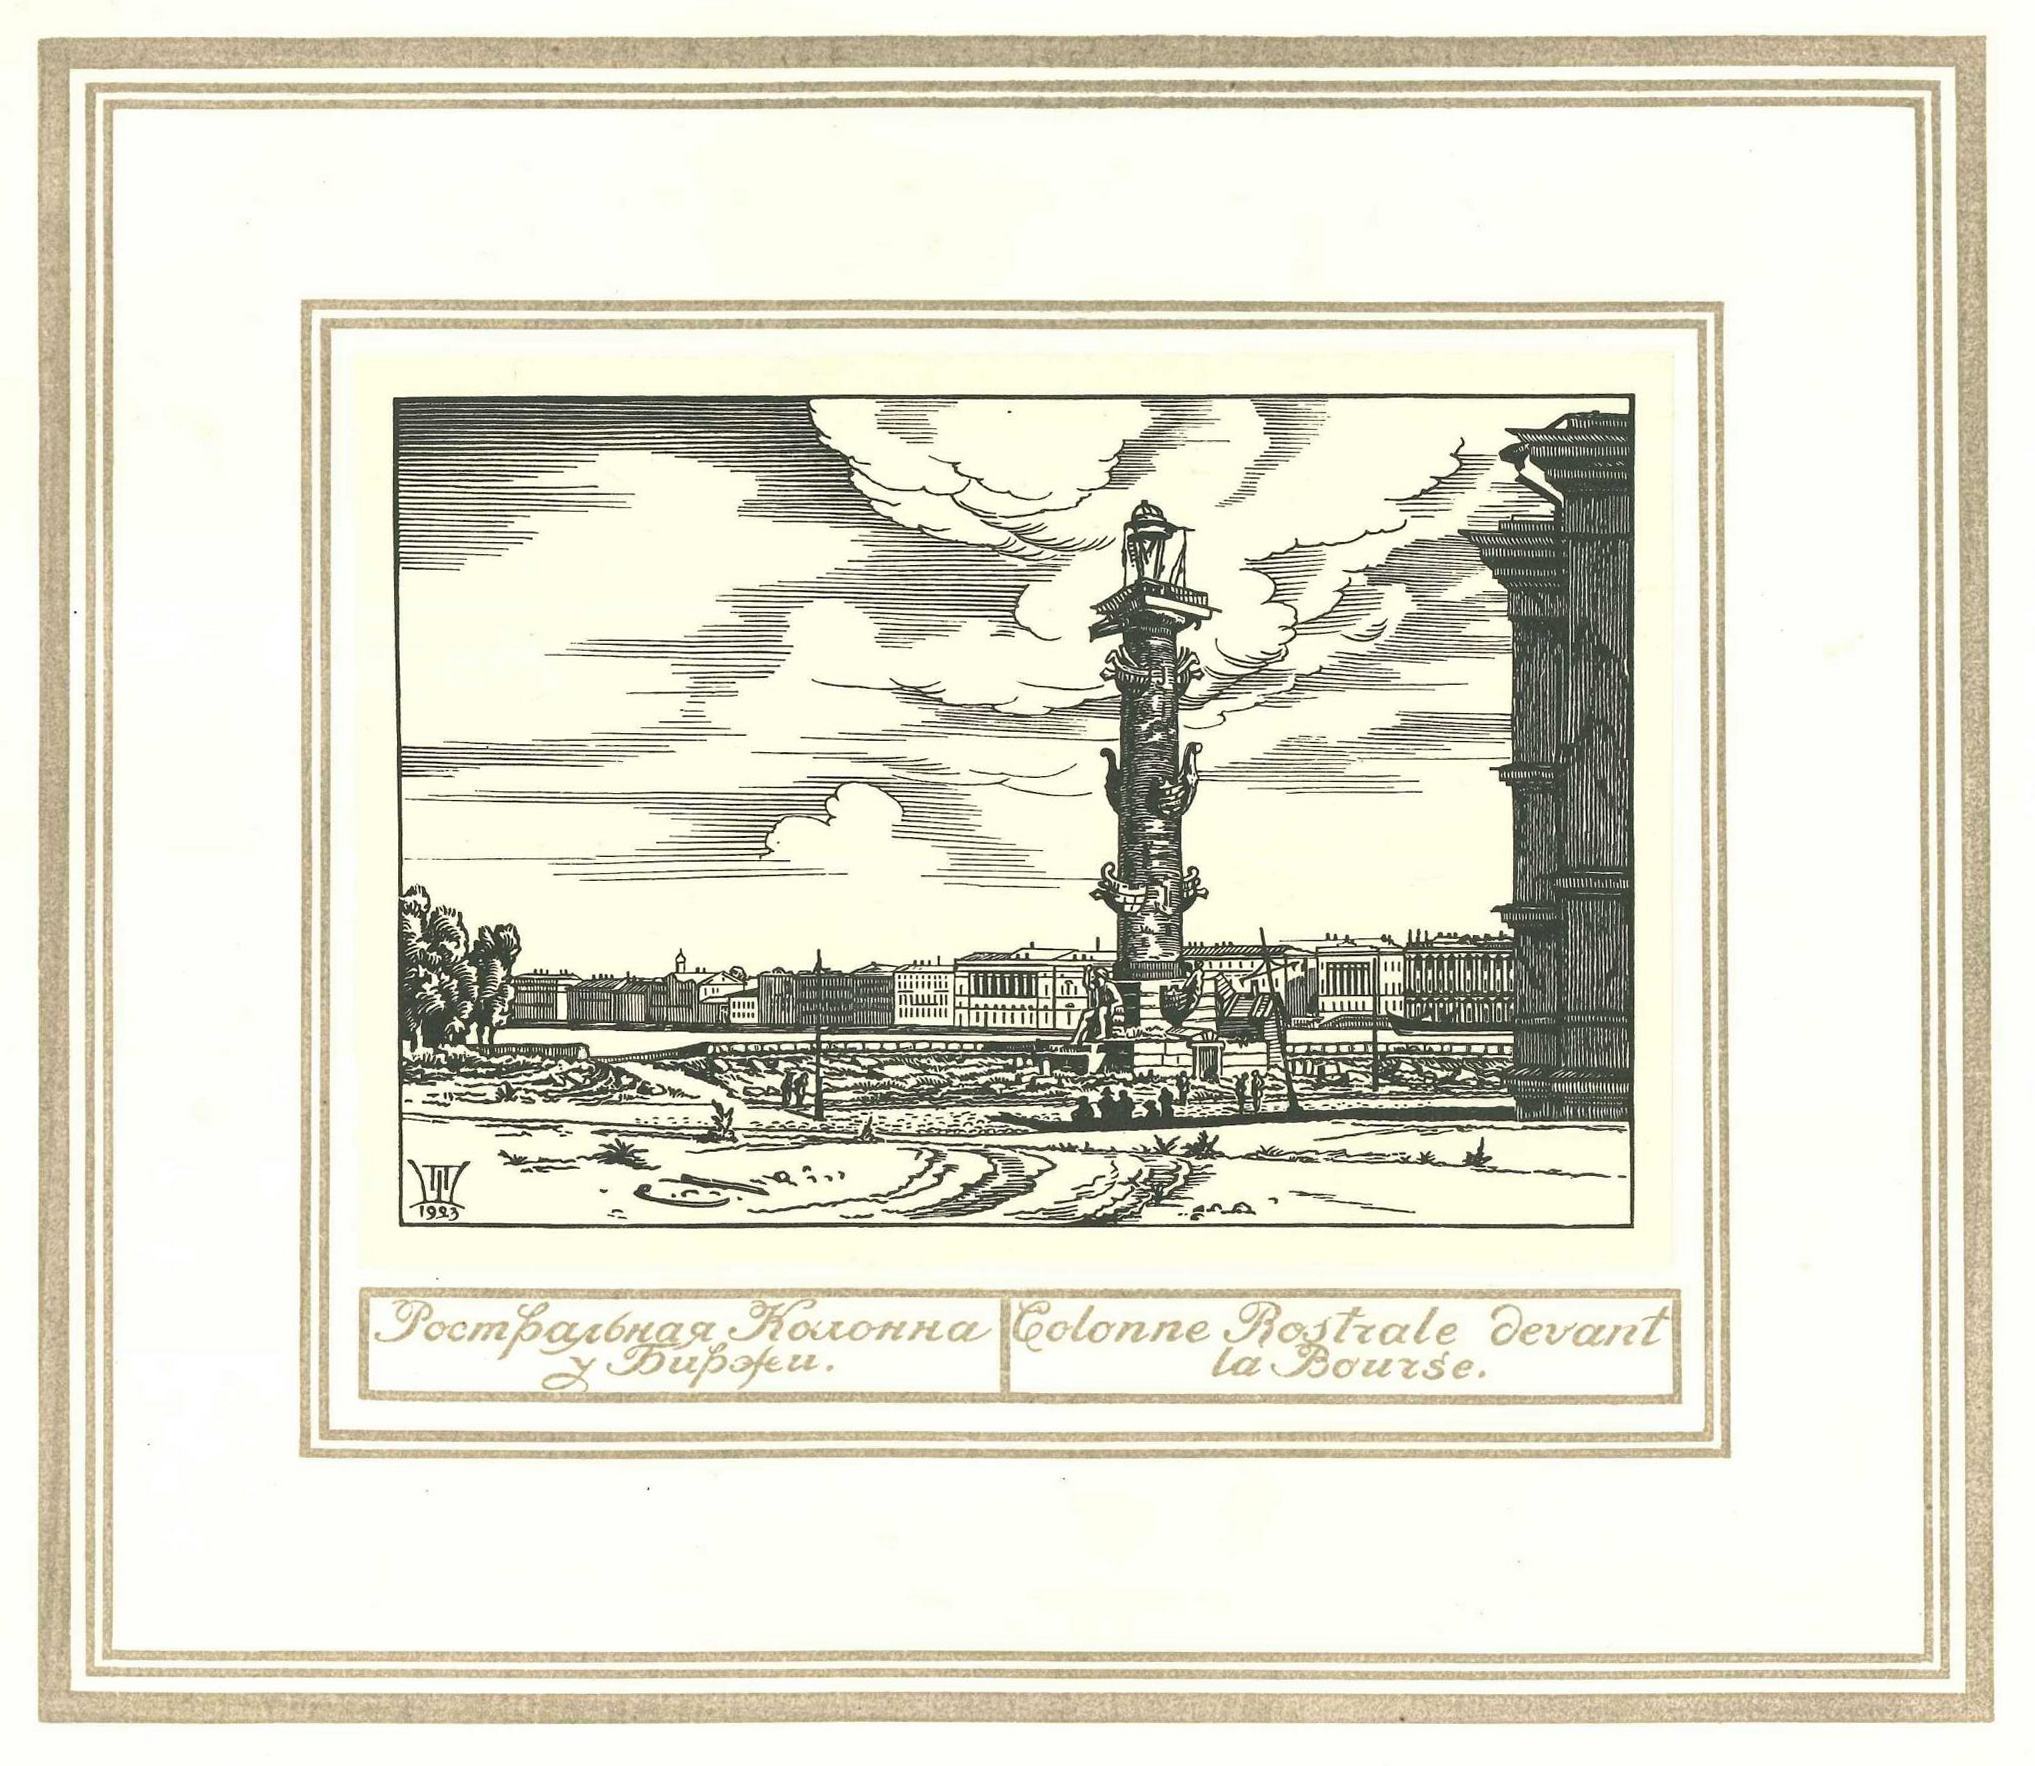 Петербург : Руины и возрождение : Гравюры на дереве / П. А. Шиллинговский. 1923